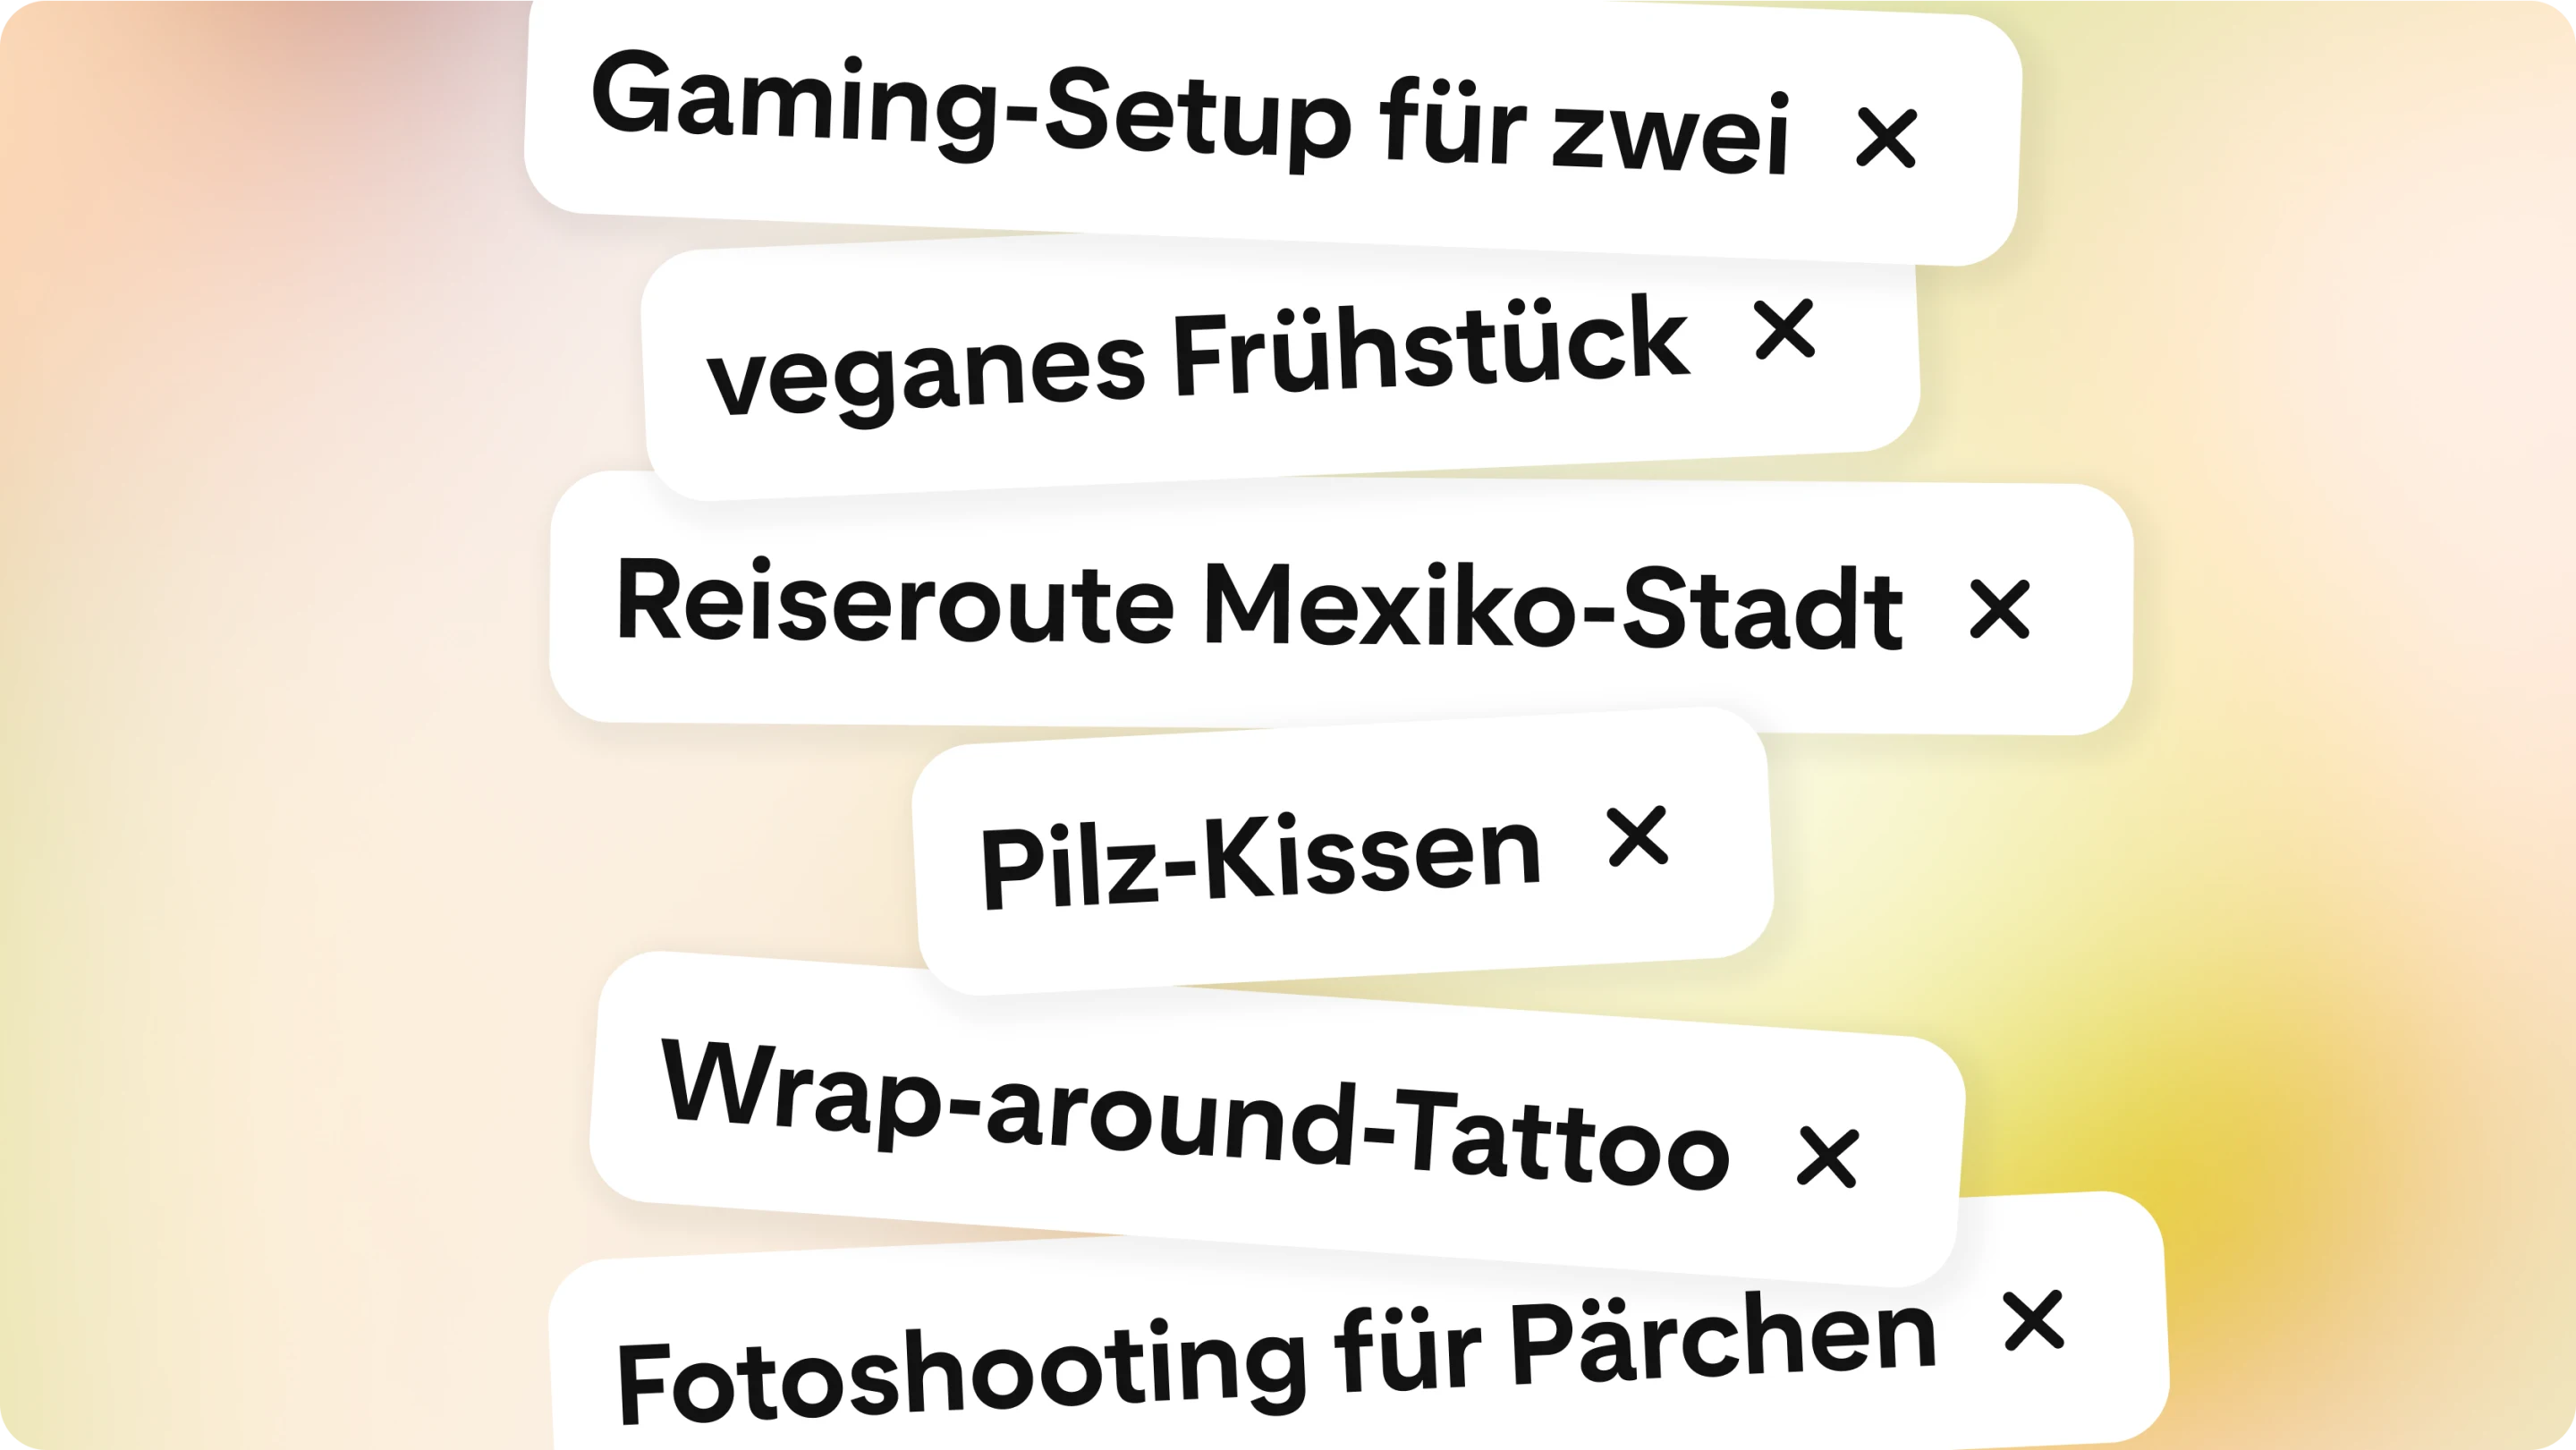 Eine Liste mit Suchbegriffen wie „wraparound tattoo“ (um Arm oder Bein geschlungenes Tattoo) und „dual gaming setup“ (Gaming-Setup für zwei Personen). 